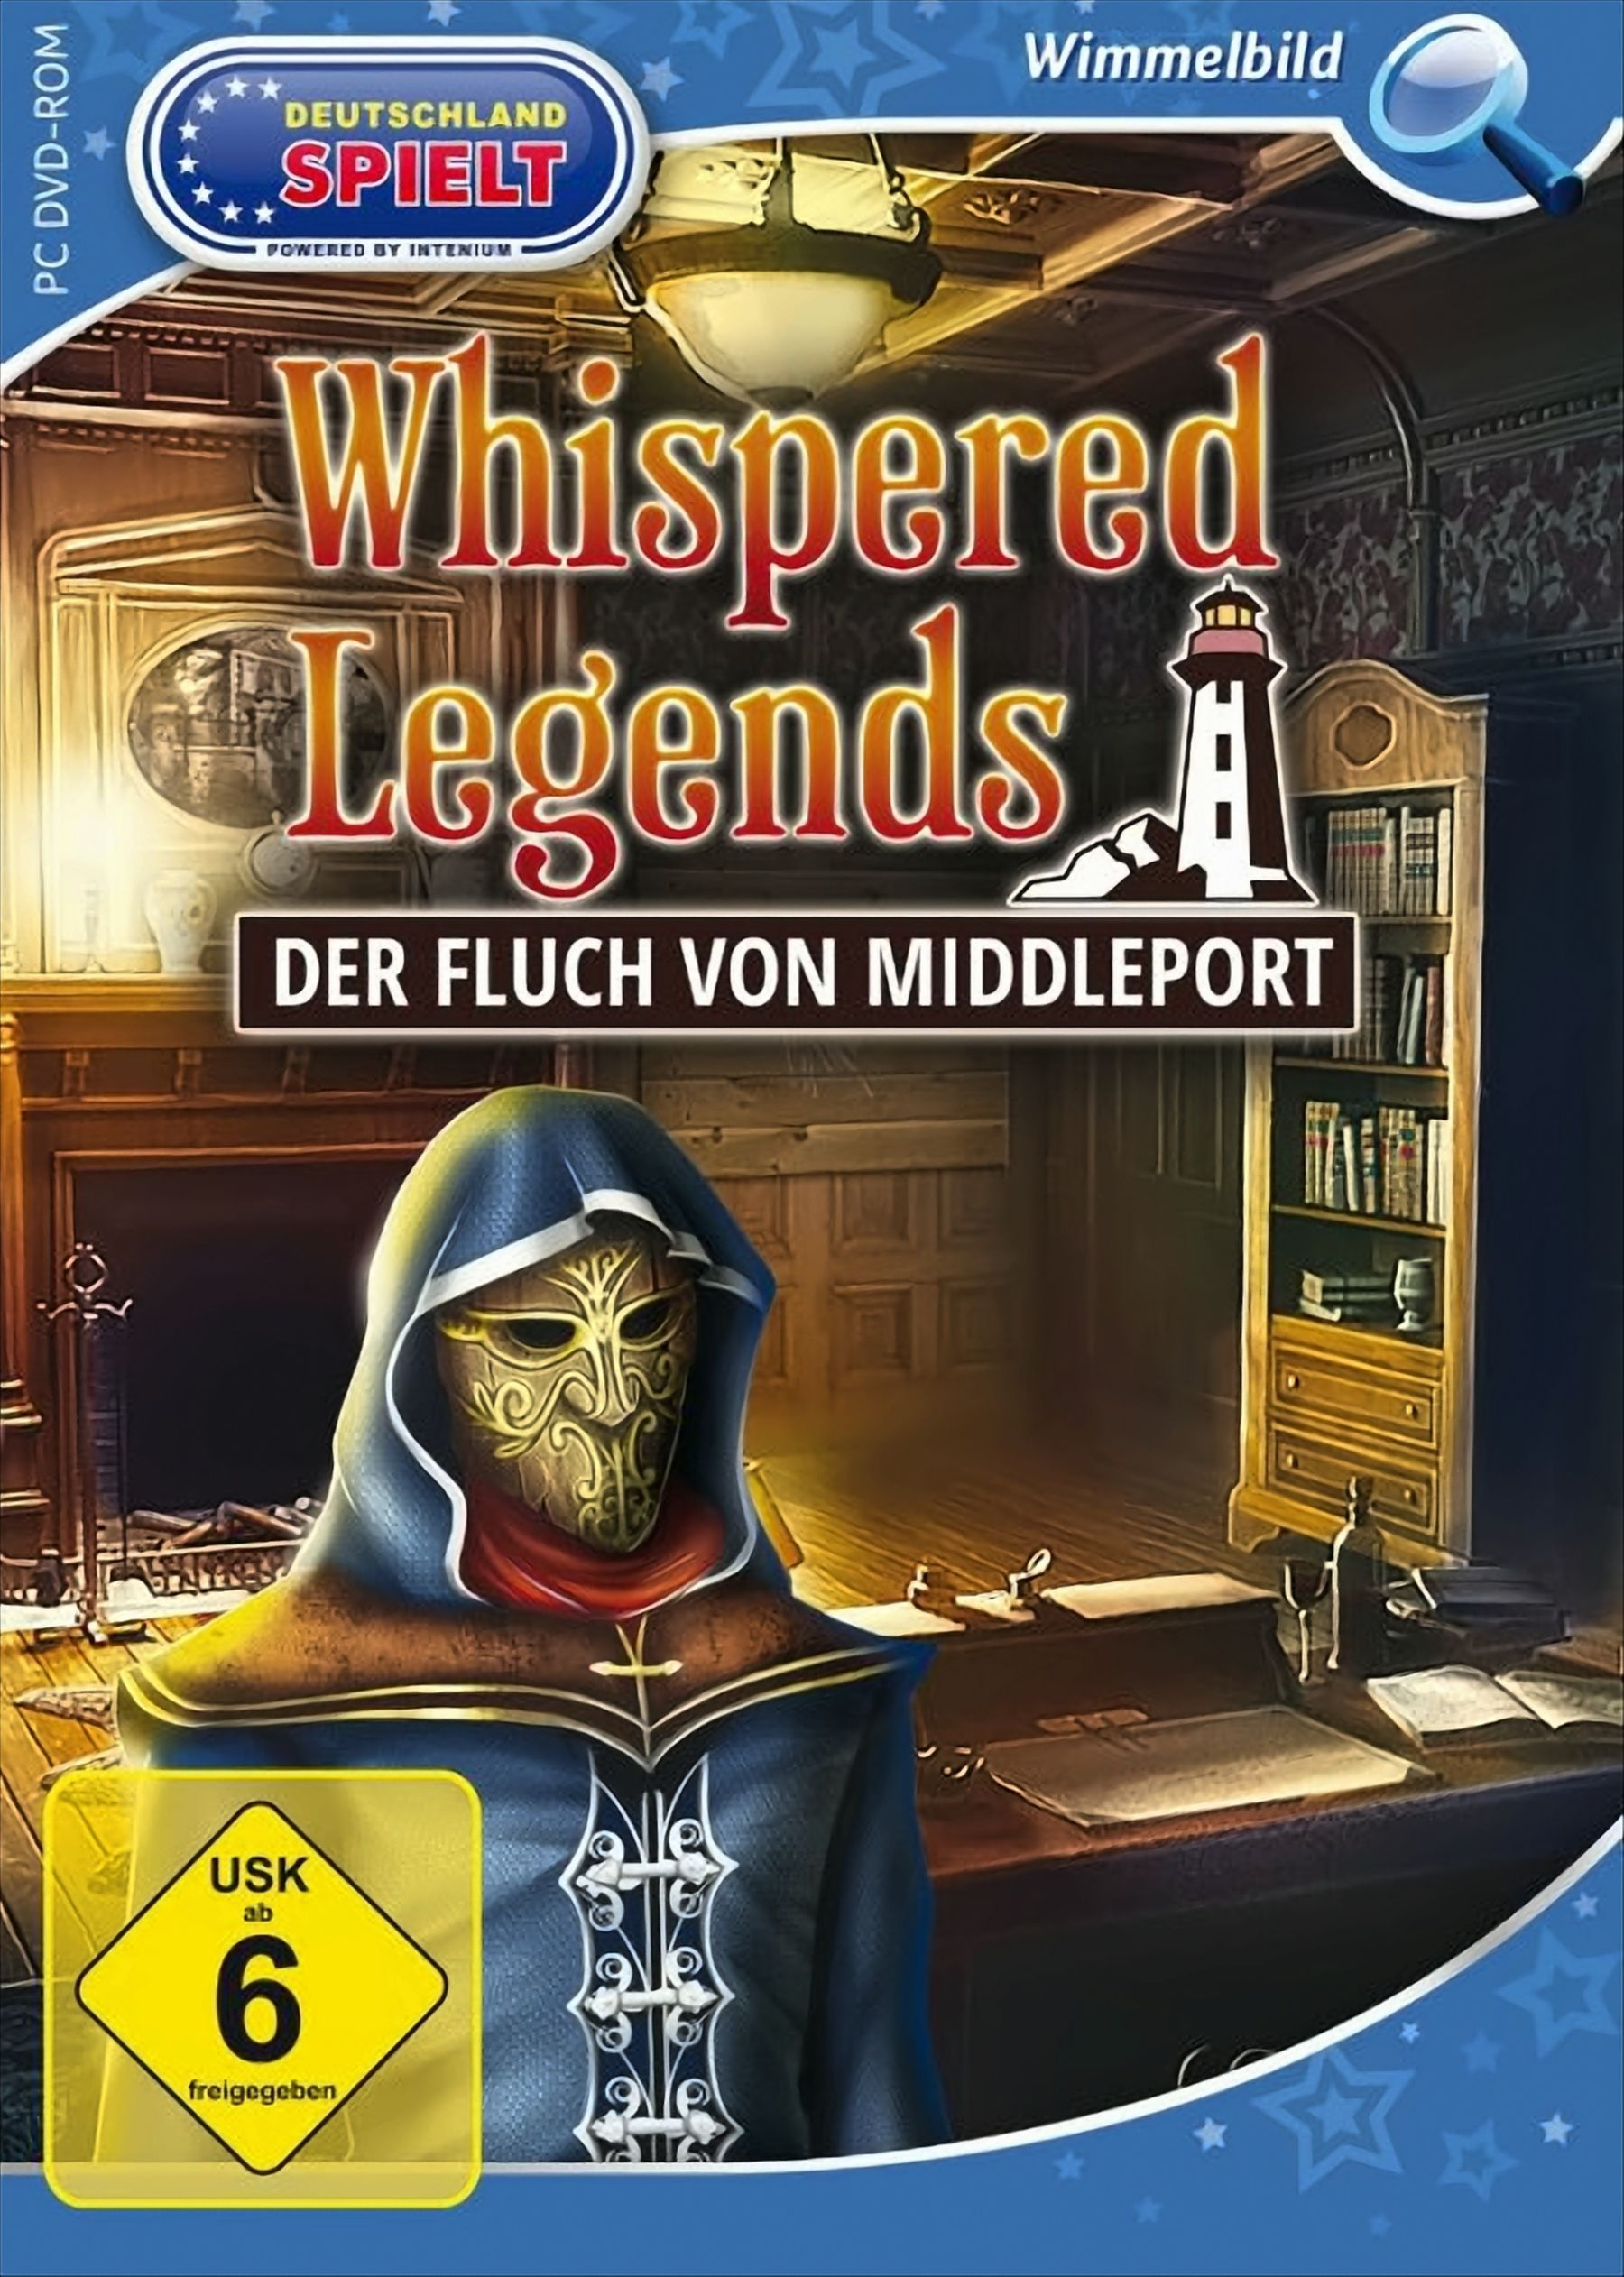 Legends: Middleport Fluch von Whispered Der - [PC]